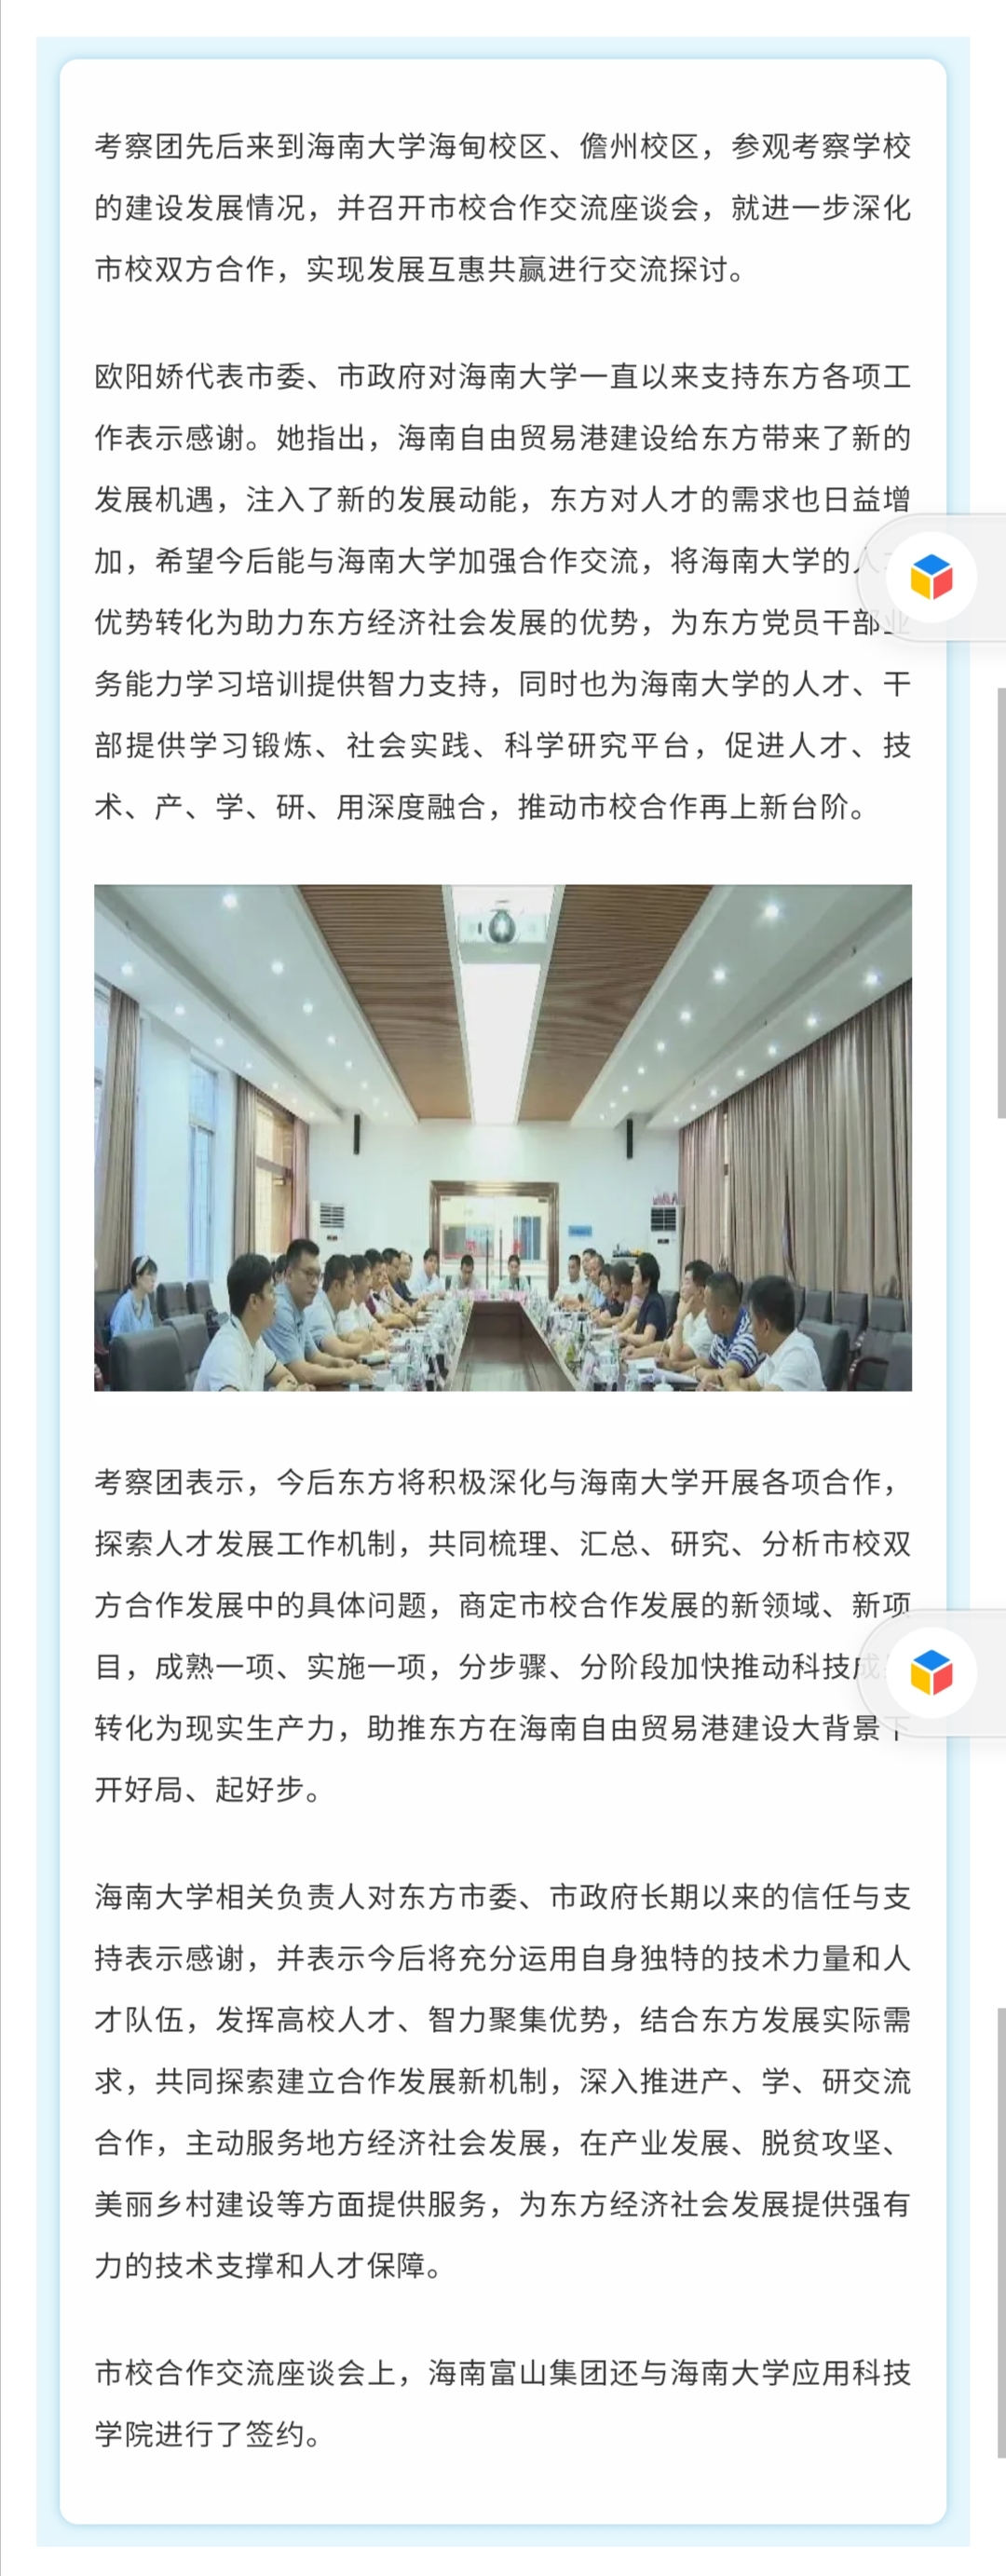 2020-7-12东方考察团赴海南大学考察 寻求合作发展之路【东方宣传微信】